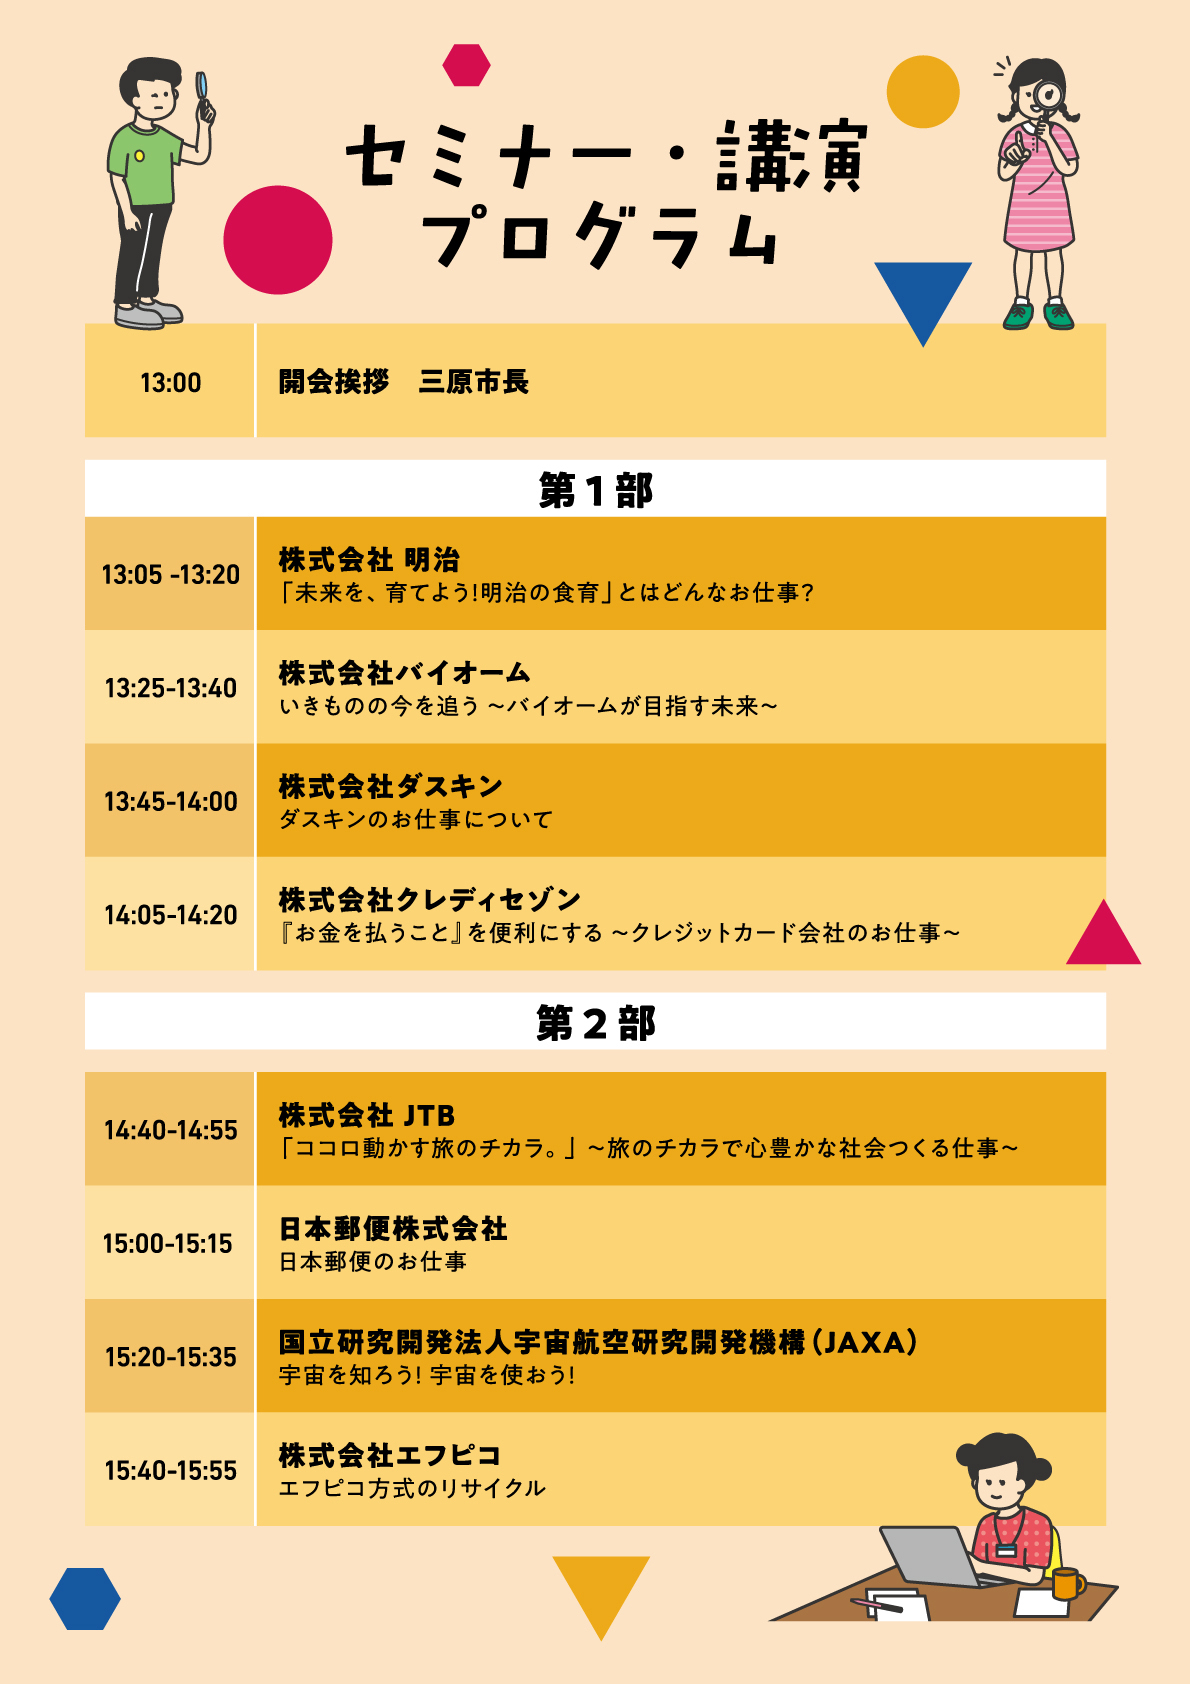 三原ファンフェスタ当日のセミナープログラム